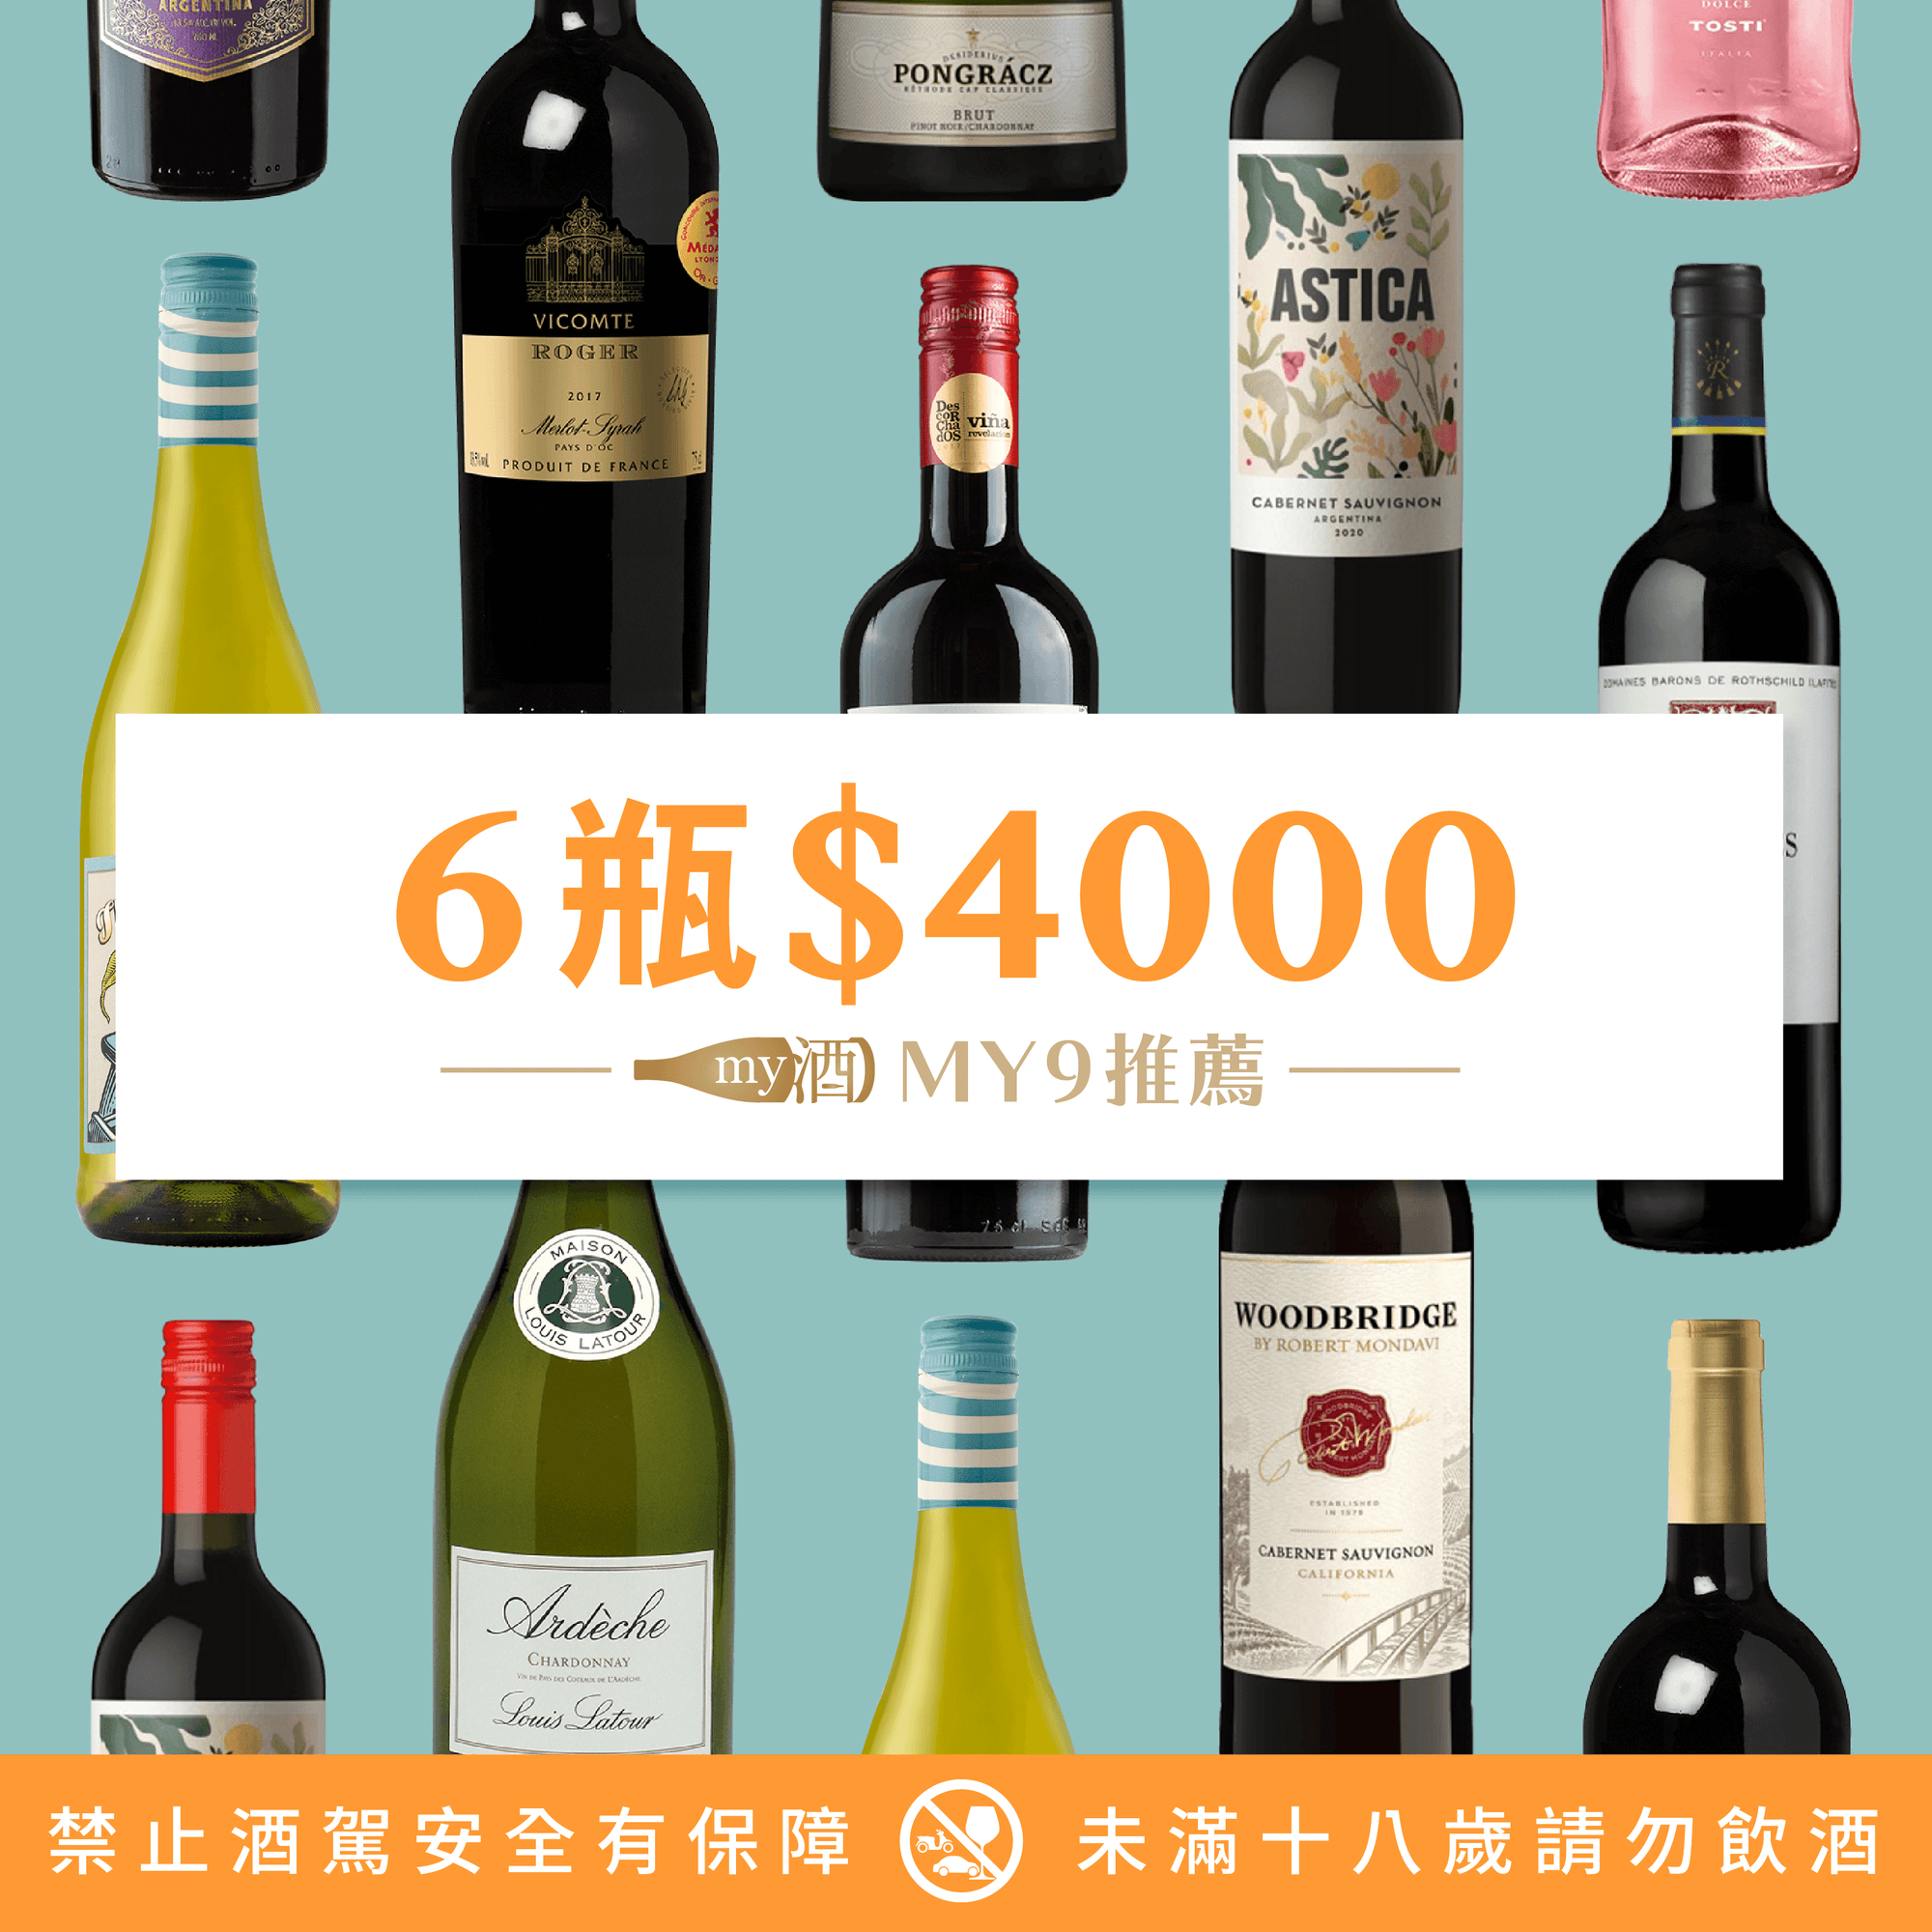 宅在家救台灣 ! 葡萄酒6瓶 $4000推薦！